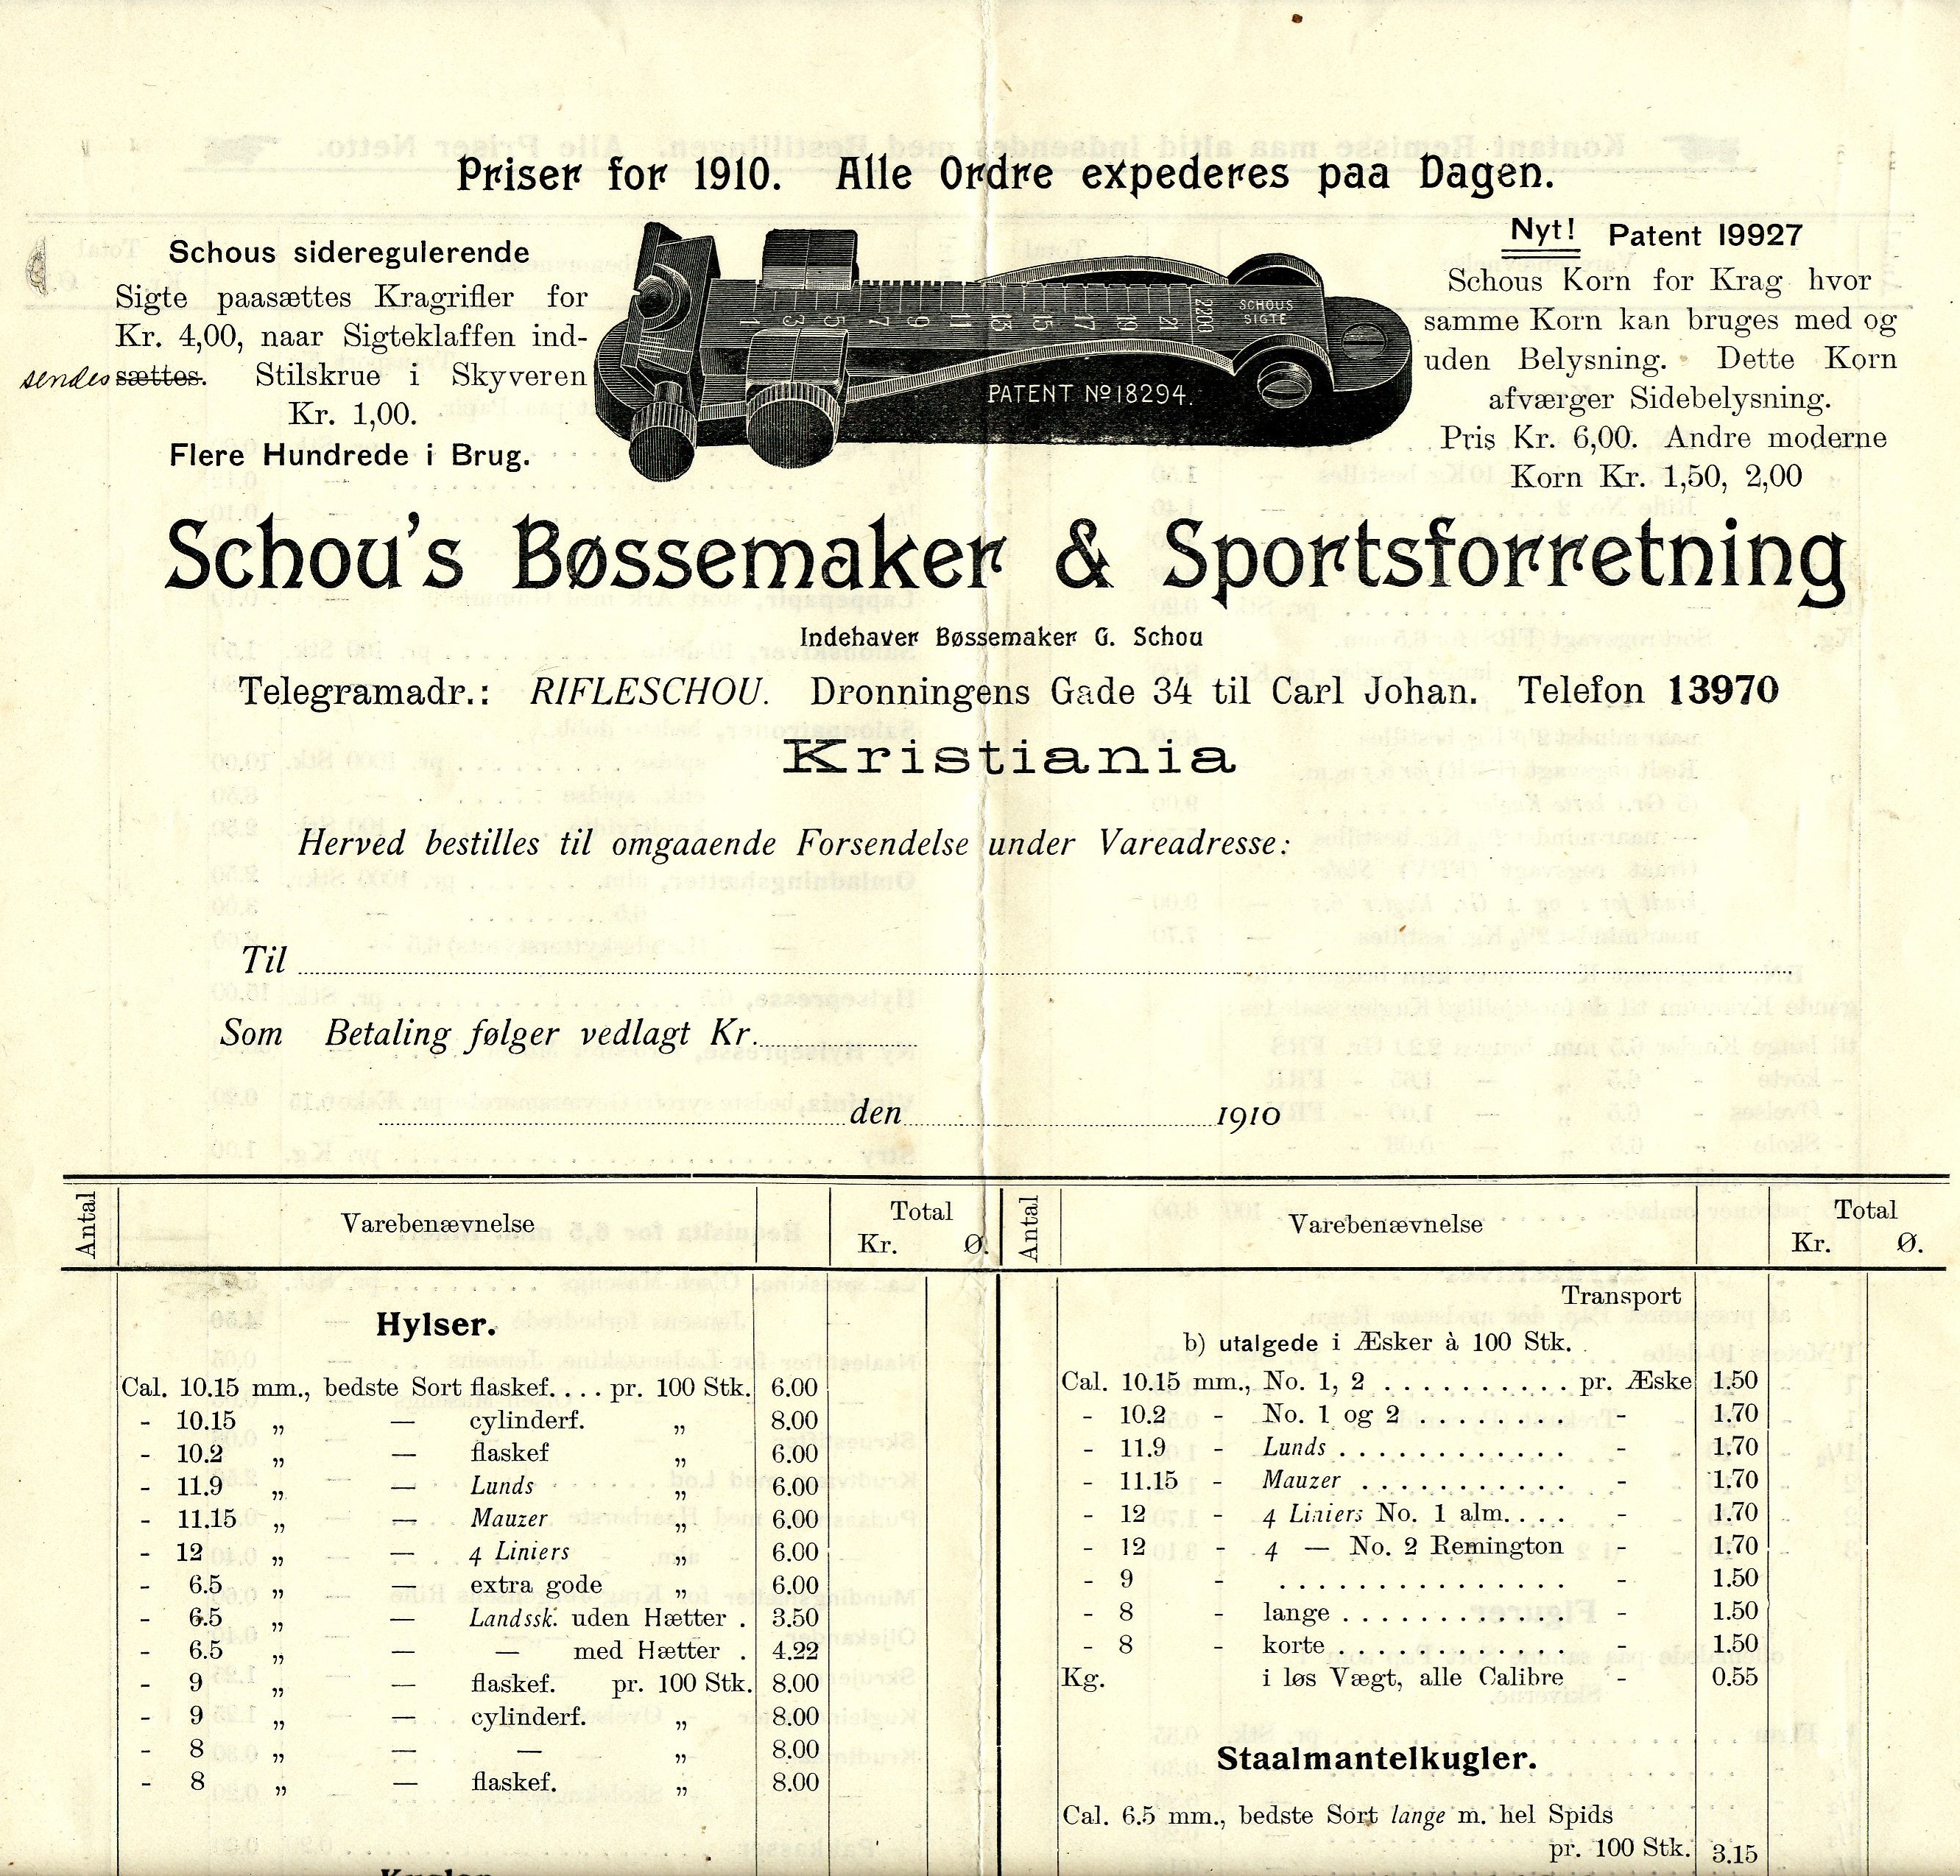 ./guns/utstyr/bilder/Utstyr-Krag-Mikrometersikte-Schous-1910-1.jpg